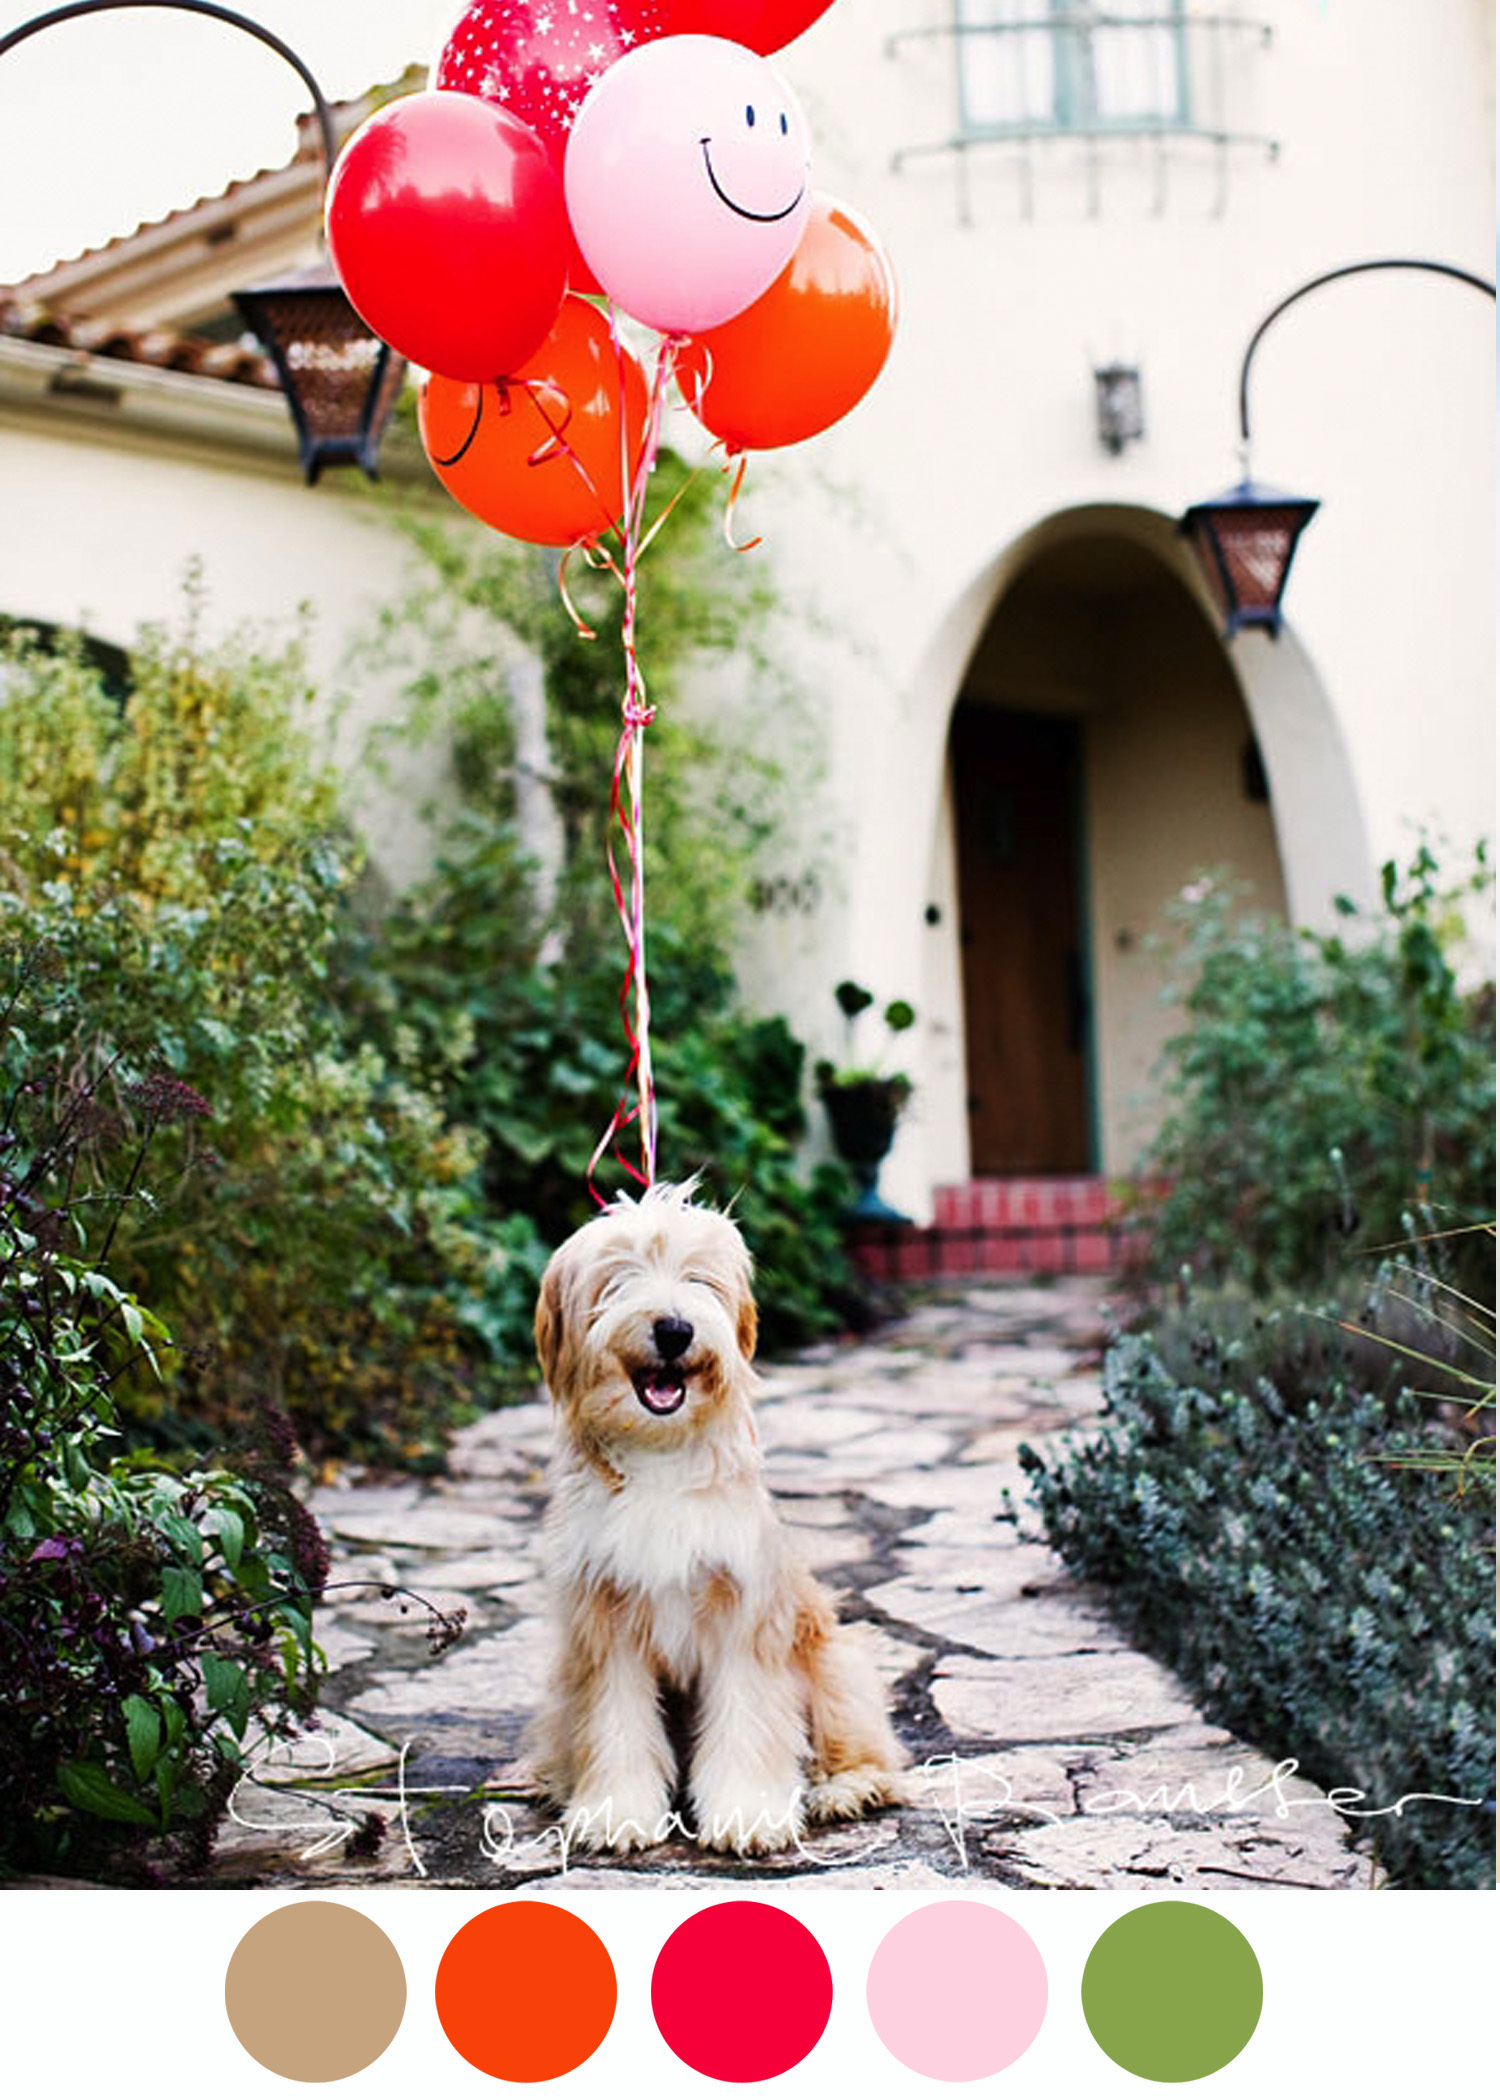 Ens pictures. Шарик собачка. Собака с воздушными шарами. Шарики воздушные животные. Воздушные шары собачки.